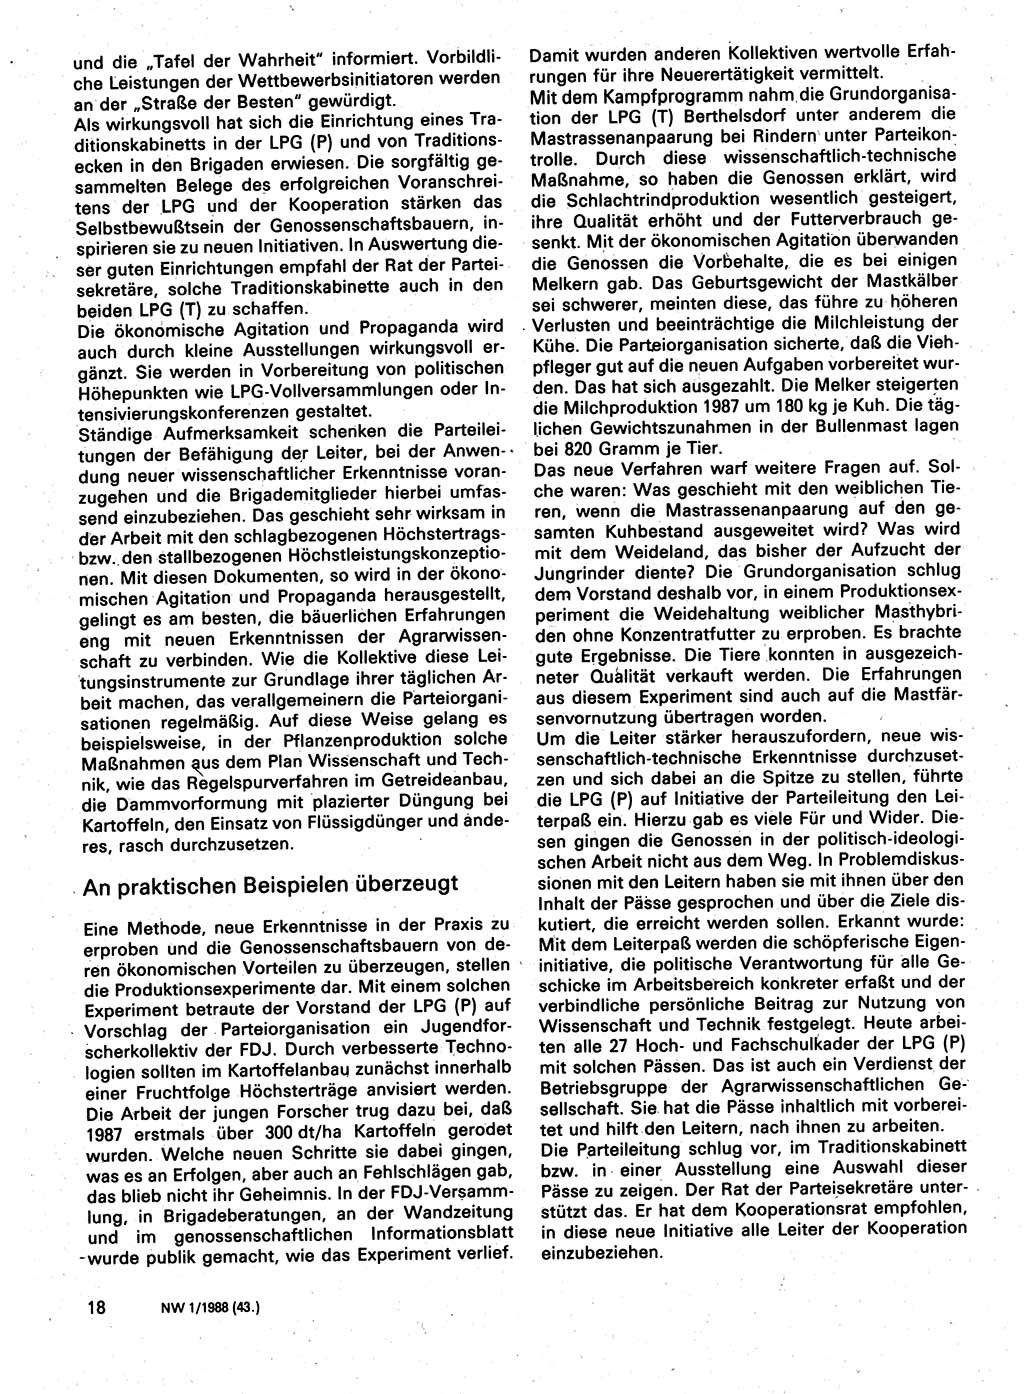 Neuer Weg (NW), Organ des Zentralkomitees (ZK) der SED (Sozialistische Einheitspartei Deutschlands) für Fragen des Parteilebens, 43. Jahrgang [Deutsche Demokratische Republik (DDR)] 1988, Seite 18 (NW ZK SED DDR 1988, S. 18)